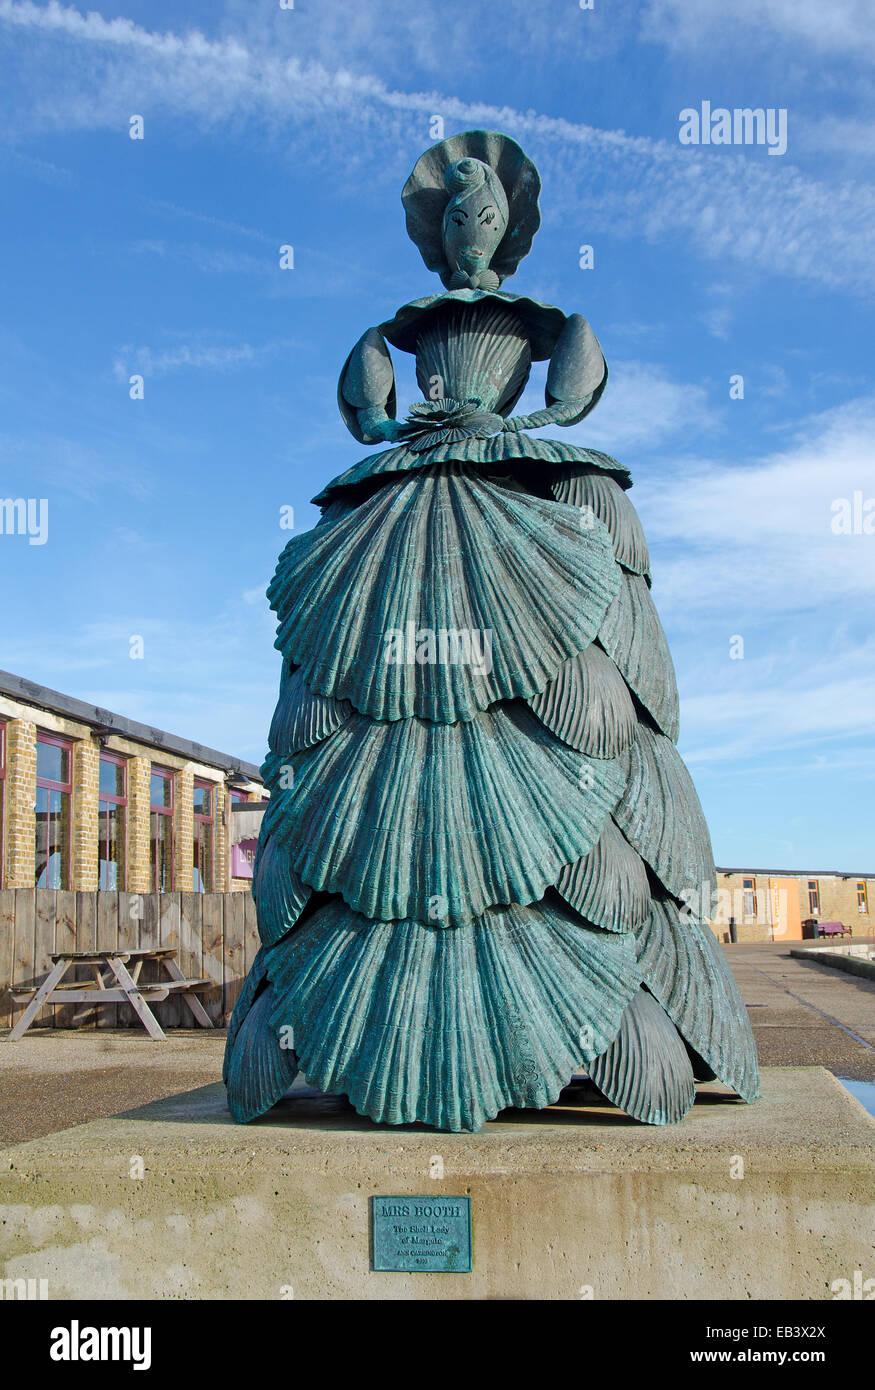 Sculpture en bronze d'une dame de shell, intitulé Mme Booth après la logeuse de Margate qui a eu une liaison avec l'artiste JMW Turner. Sc Banque D'Images